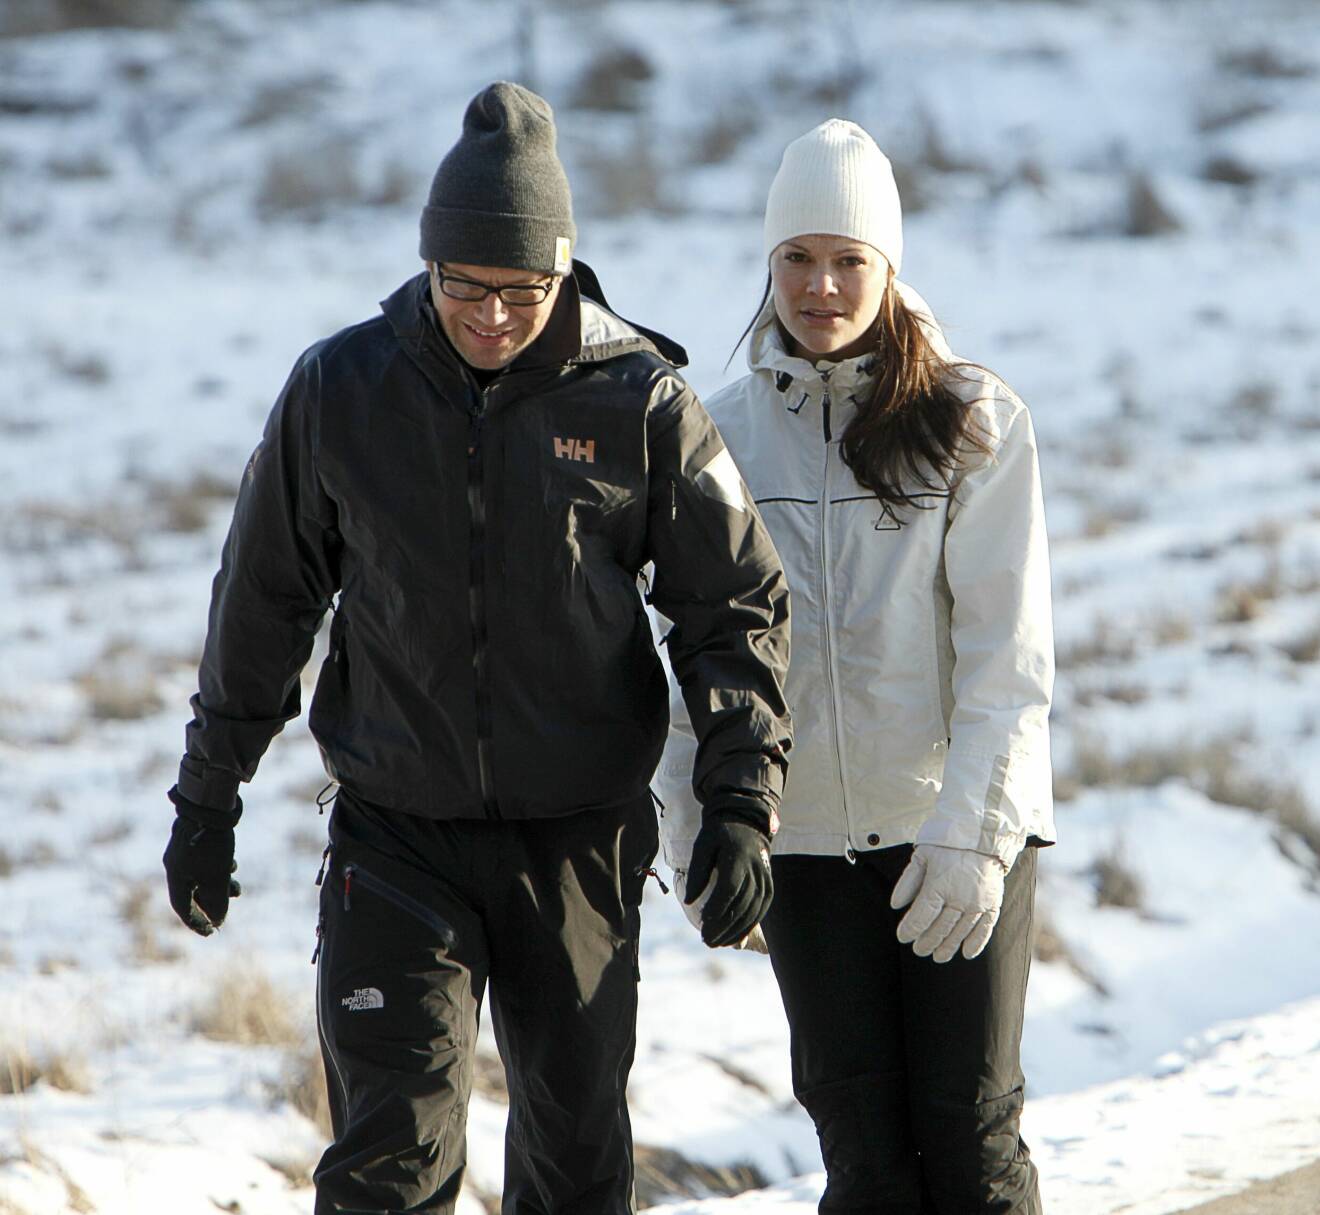 Kronprinsessan Victoria och prins Daniel 2009, på promenad i snön på Drottningholm där frieriet ägde rum